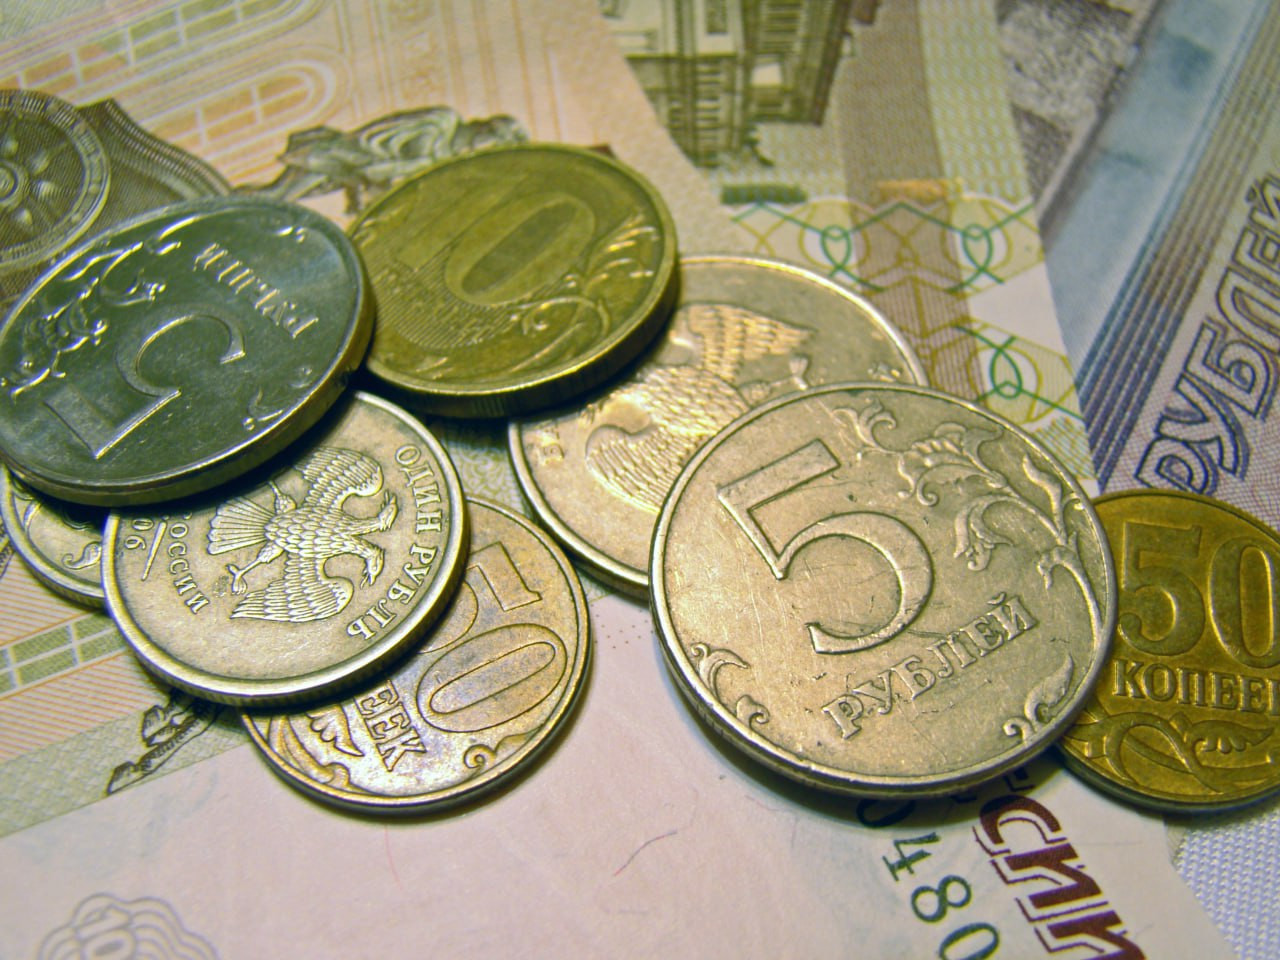 Бесплатно обменять монеты на банкноты могут жители Ставрополья